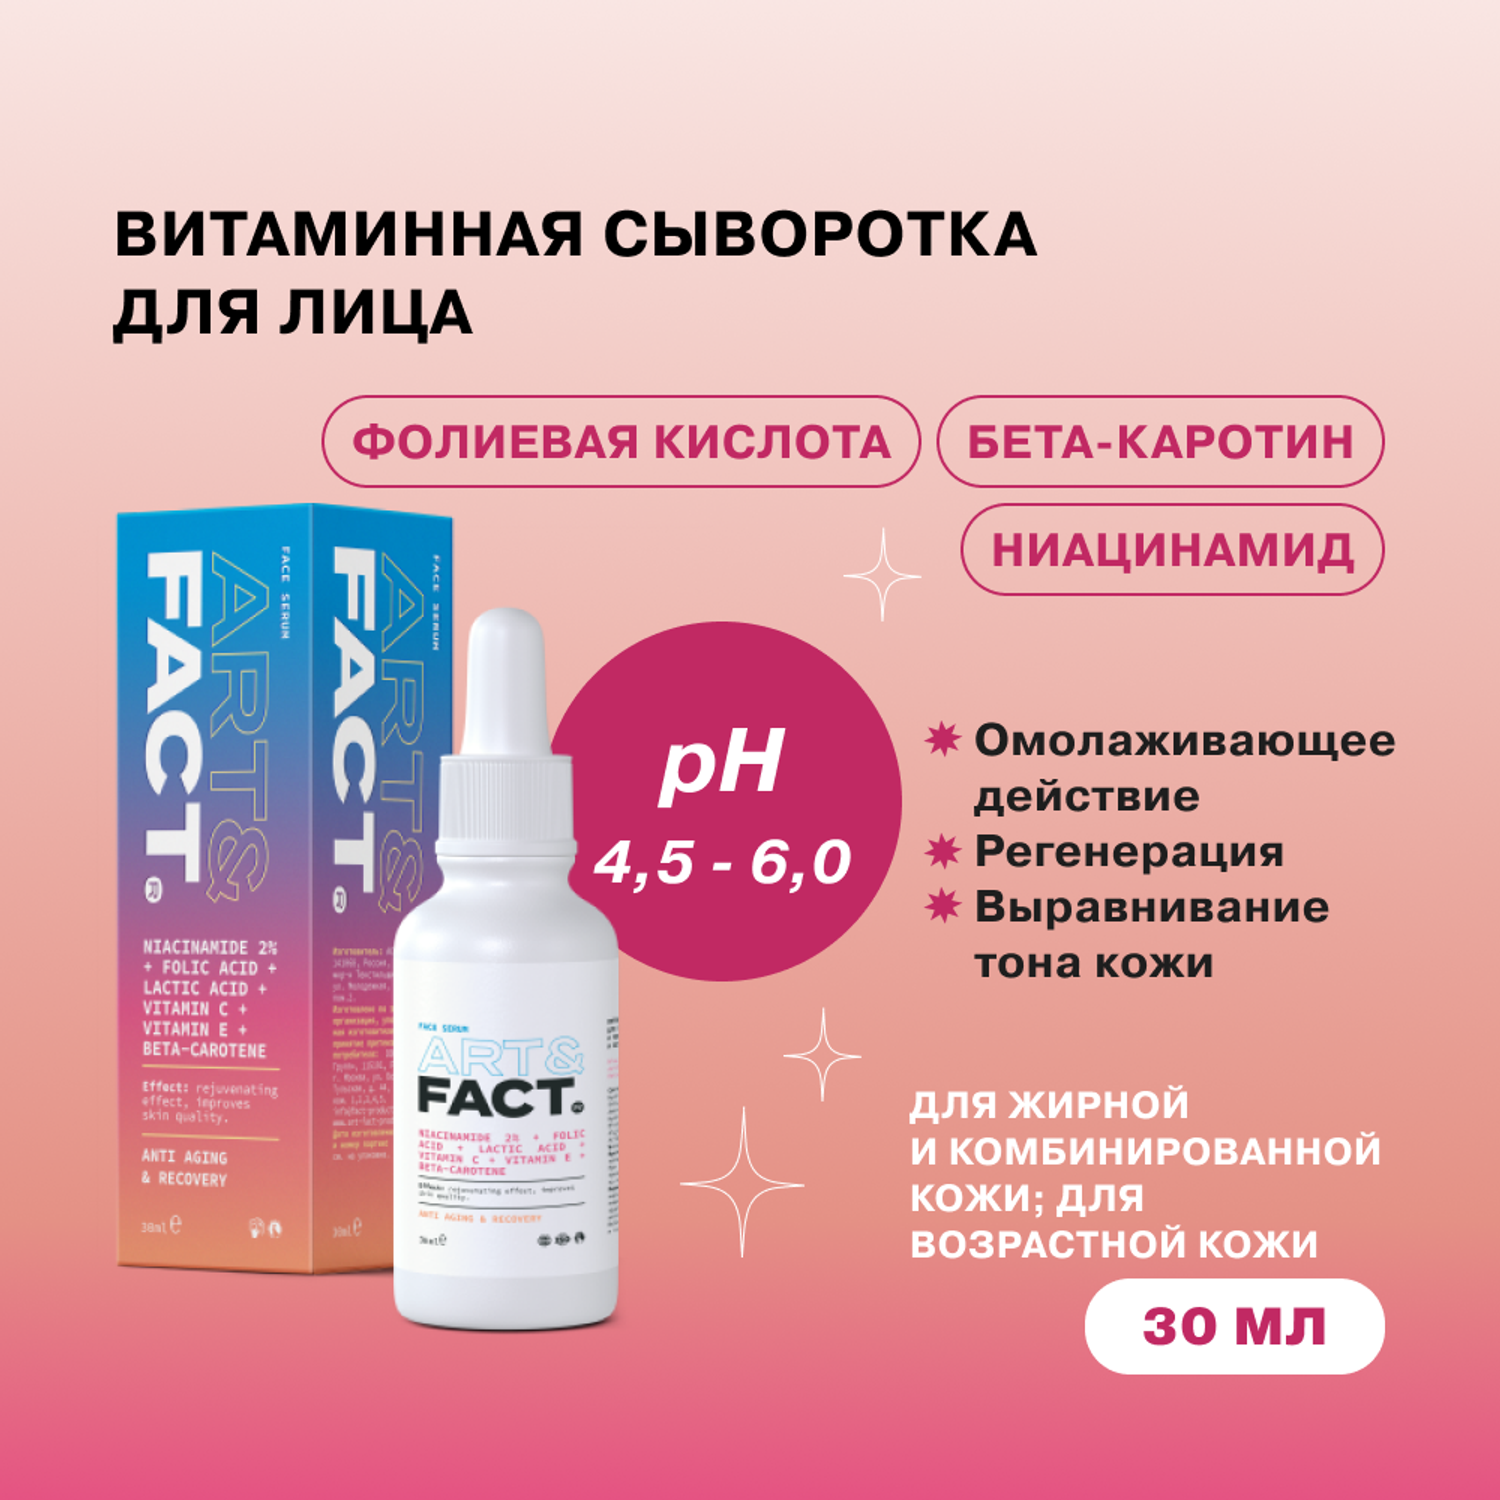 Сыворотка для лица ARTFACT. витаминная с ниацинамидом фолиевой и молочной кислотой витаминами и бета-каротином 30 мл - фото 2